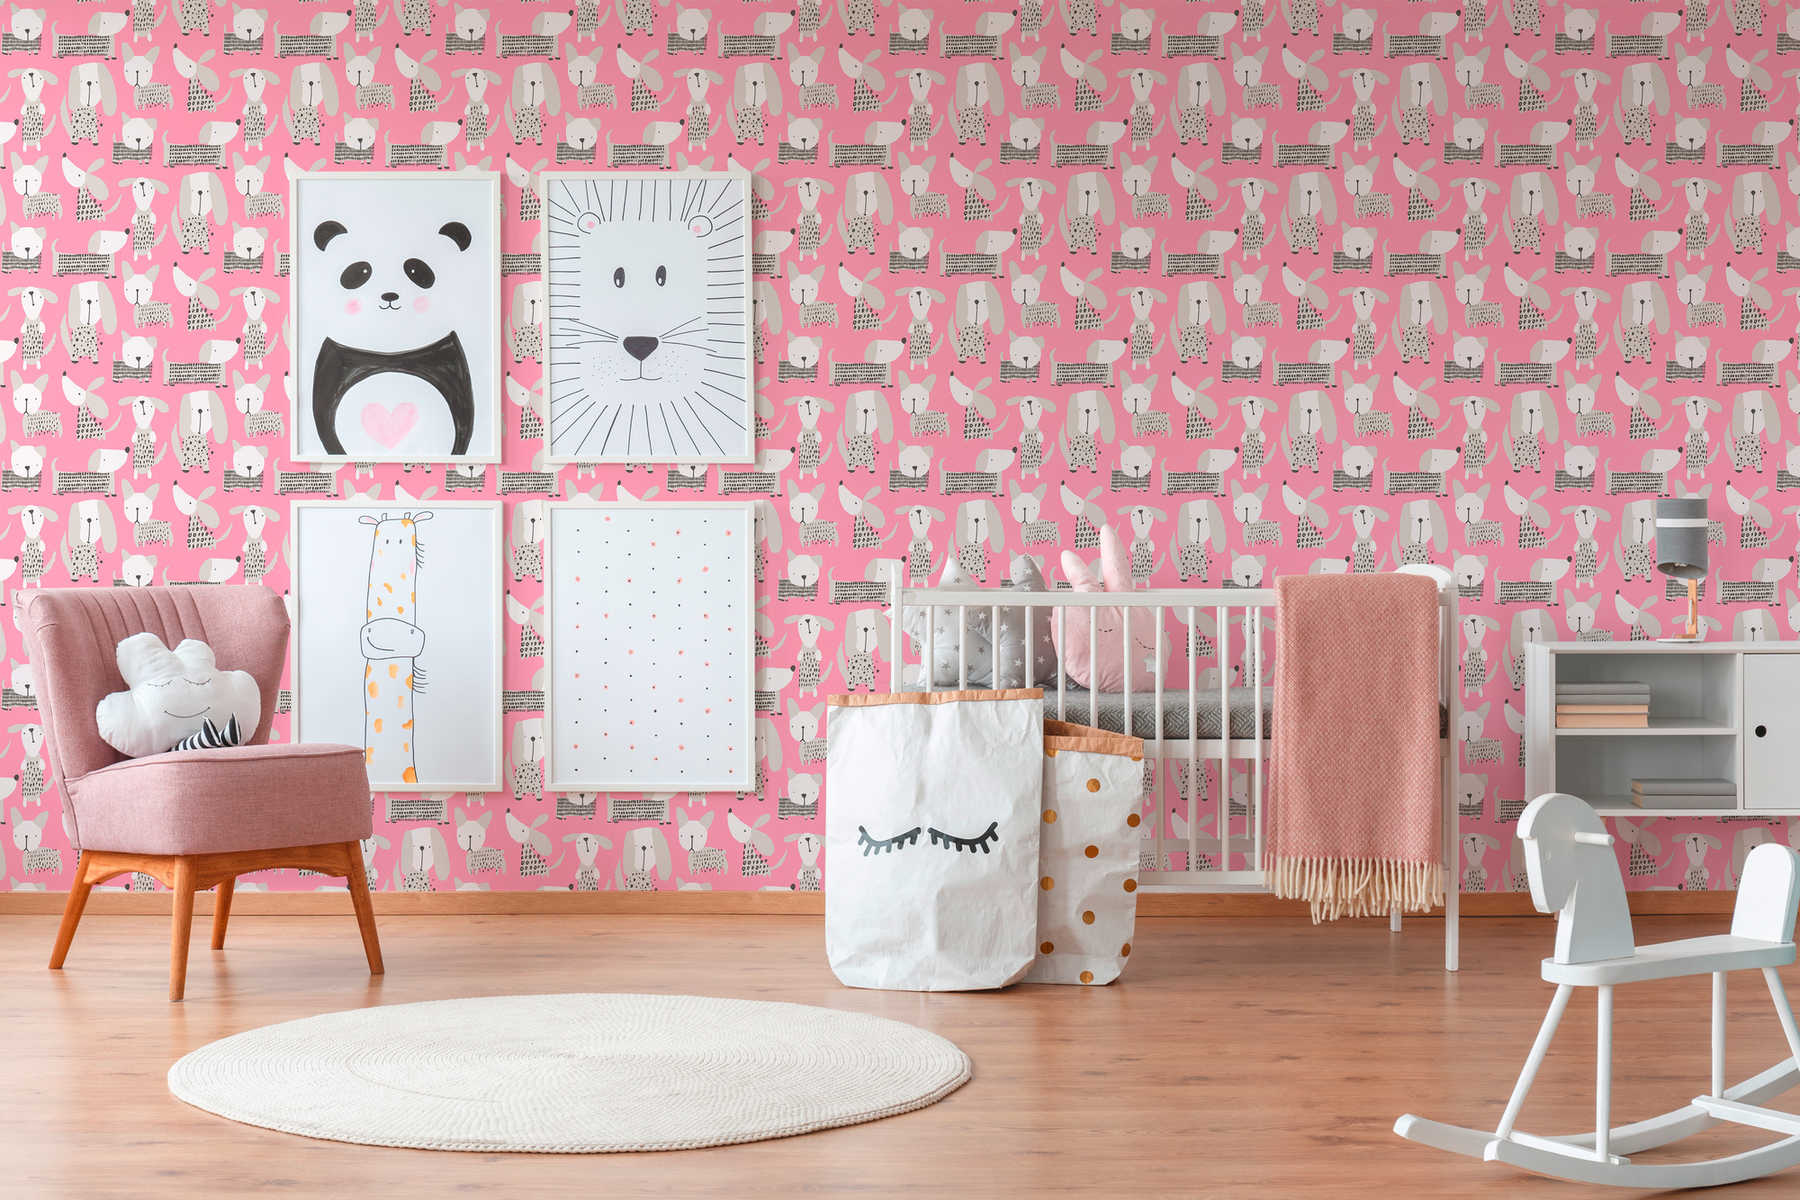             Papel pintado de perro en estilo cómico para habitación infantil - rosa, blanco
        